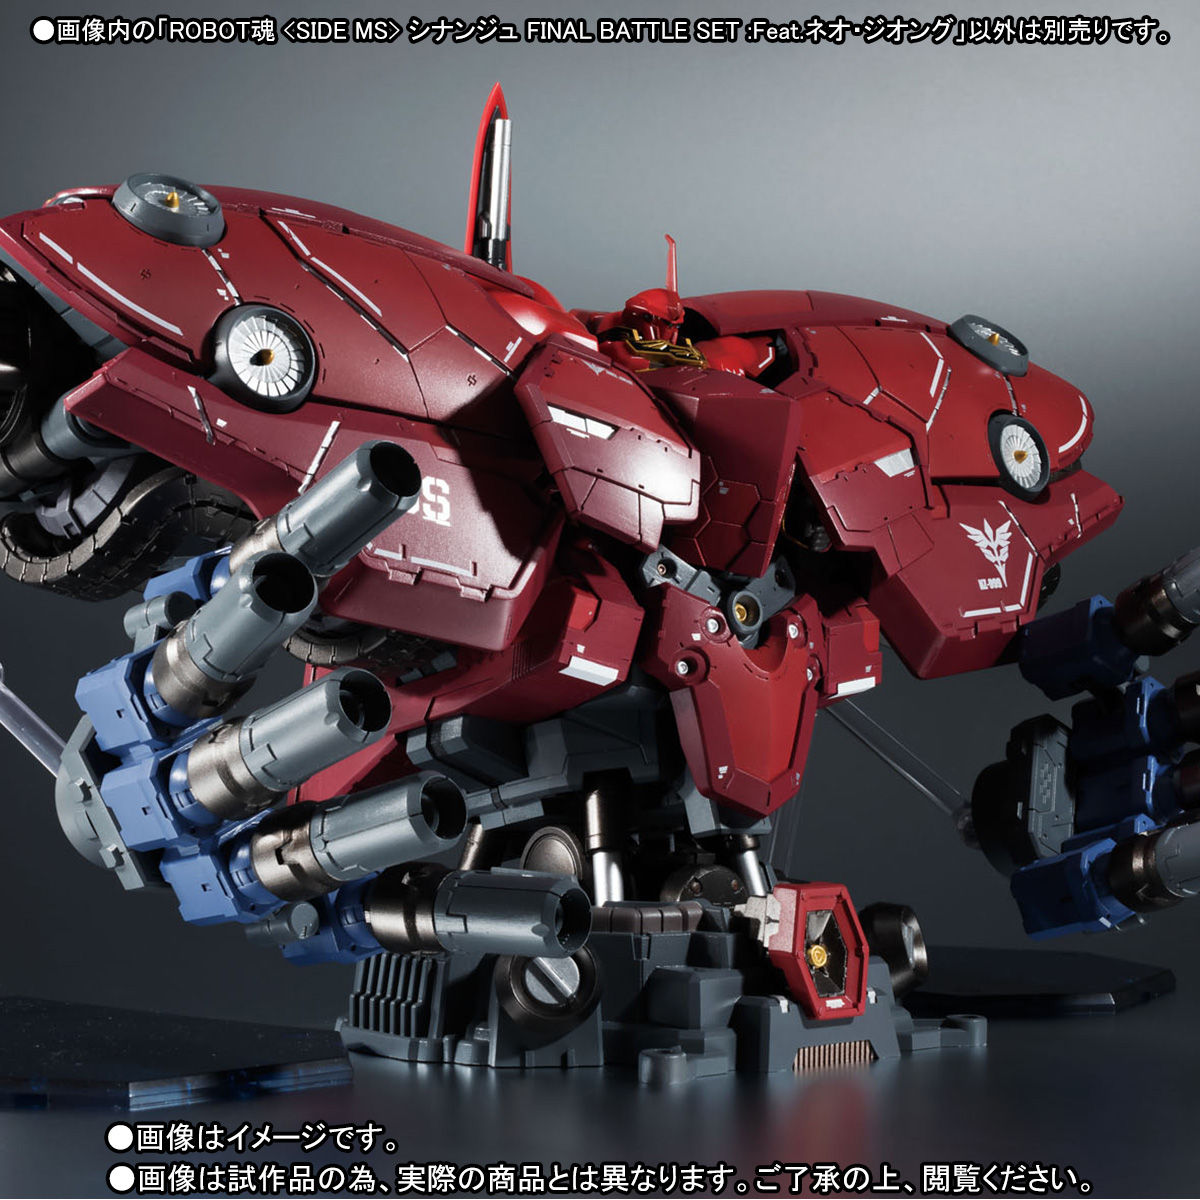 Robot Spirits(Side MS) R-SP MSN-06S Sinaju Final Battle Set : Feat. NZ-999 Neo Zeong